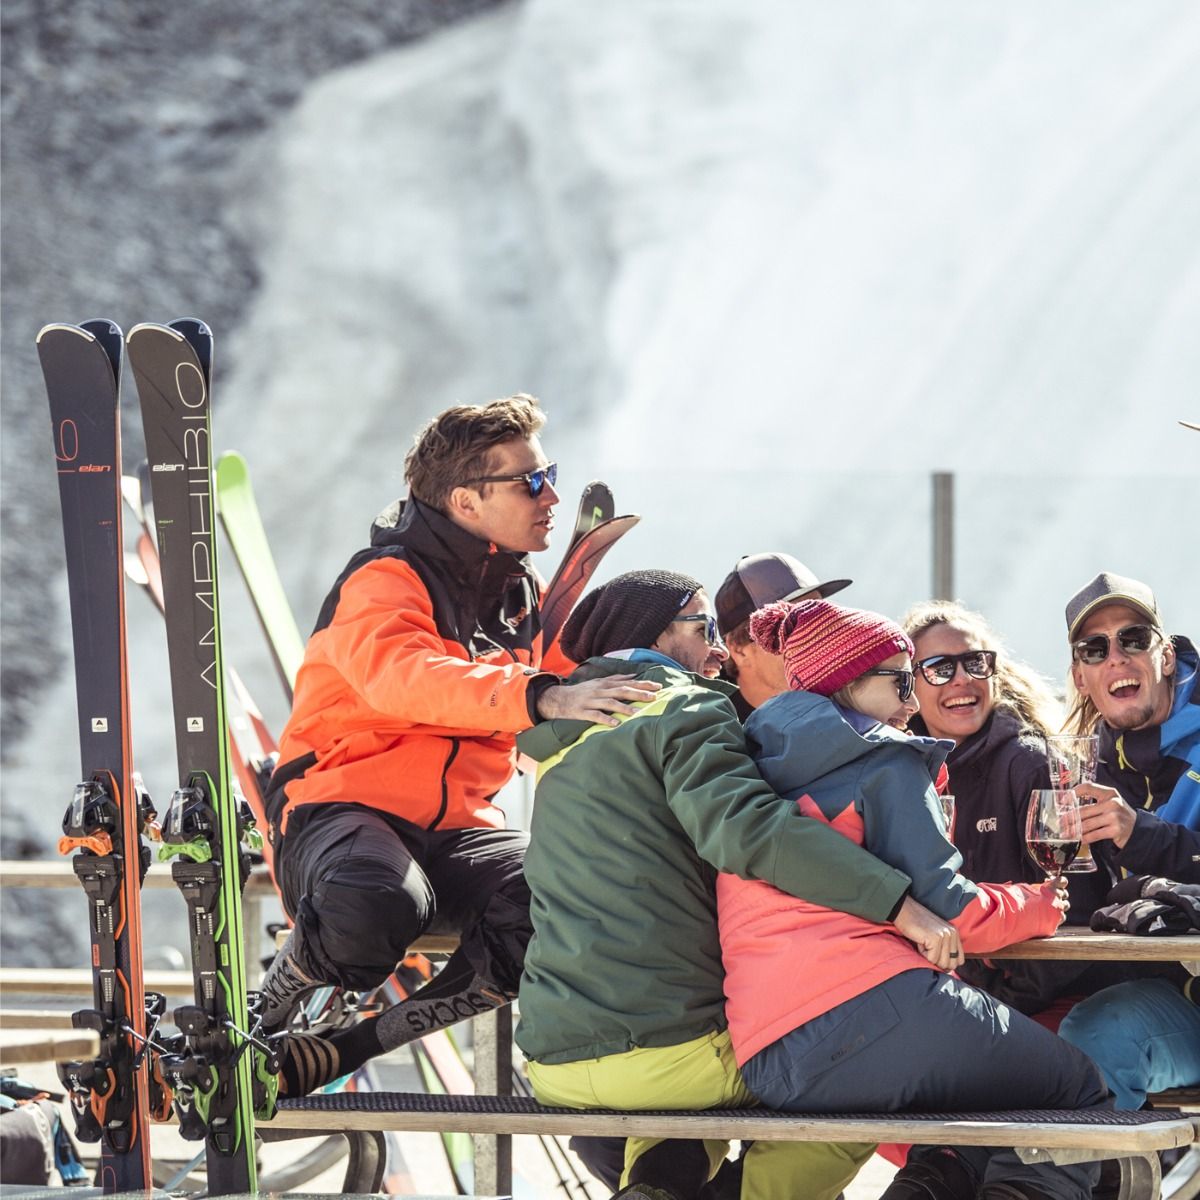 Горные лыжи с креплениями ELAN 2019-20 Amphibio 16Ti FusionX + EMX 12 FusionX